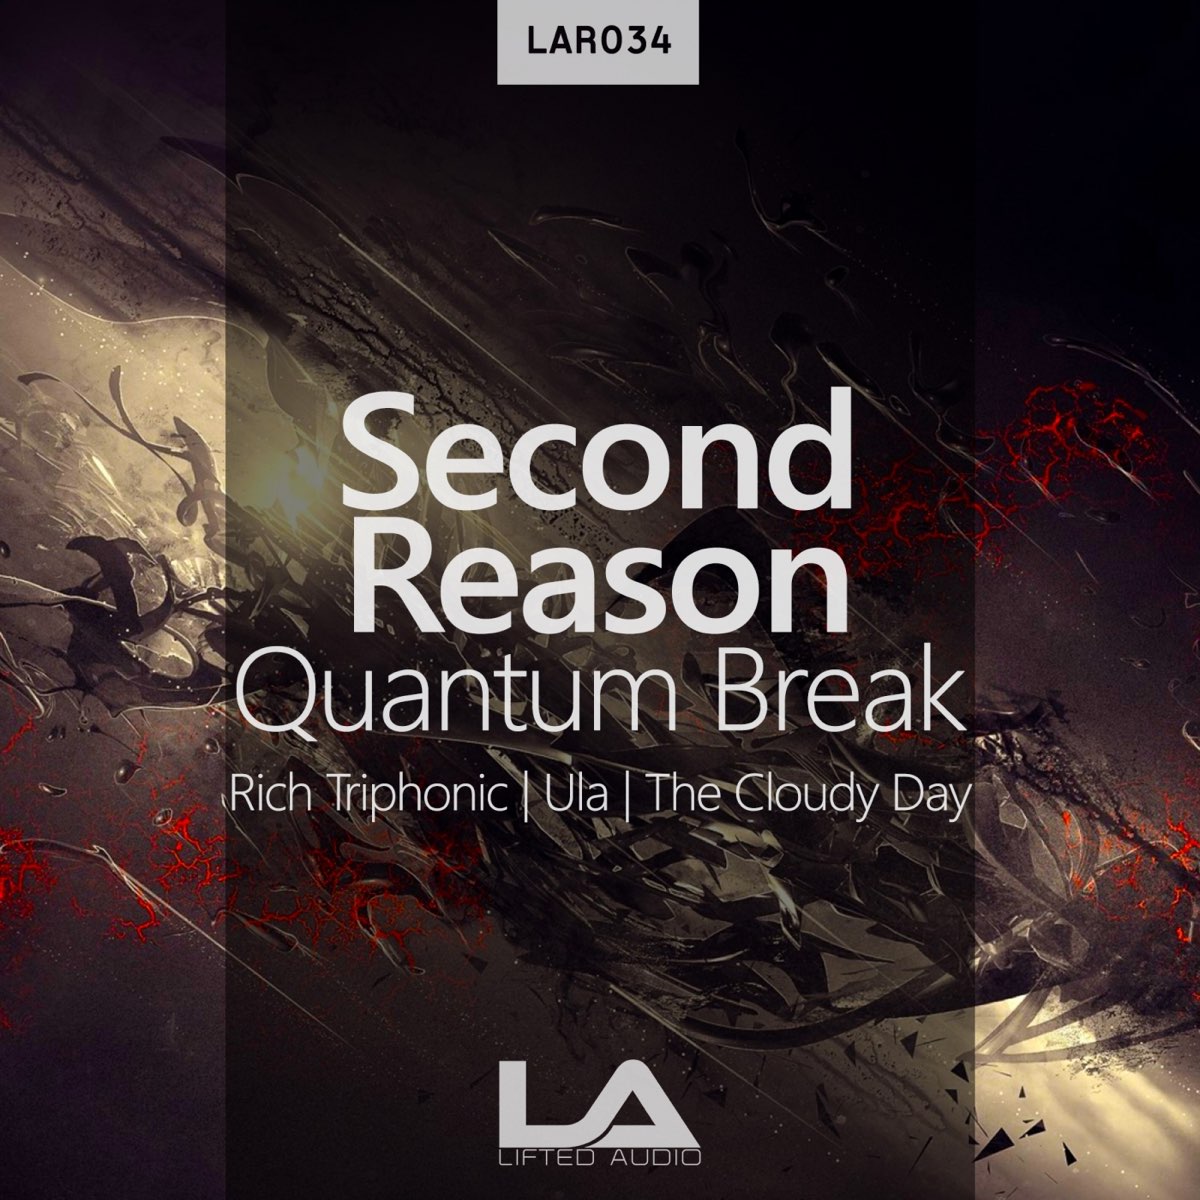 Second break. Reason песня. Quantum Break Cover.